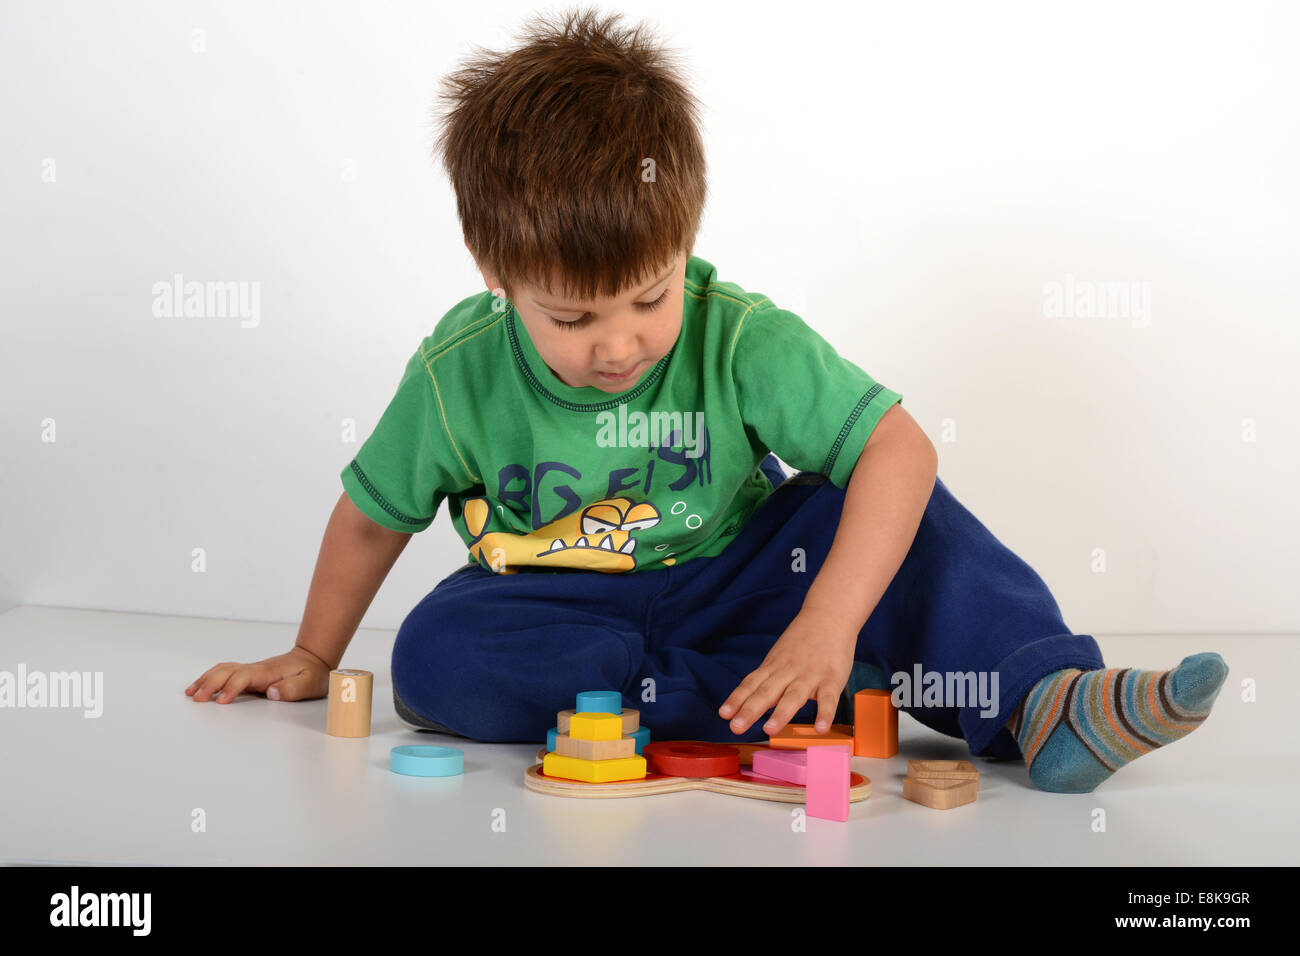 Niño jugando con juegos educativos juguetes juguetes rompecabezas jigsaw uk Foto de stock